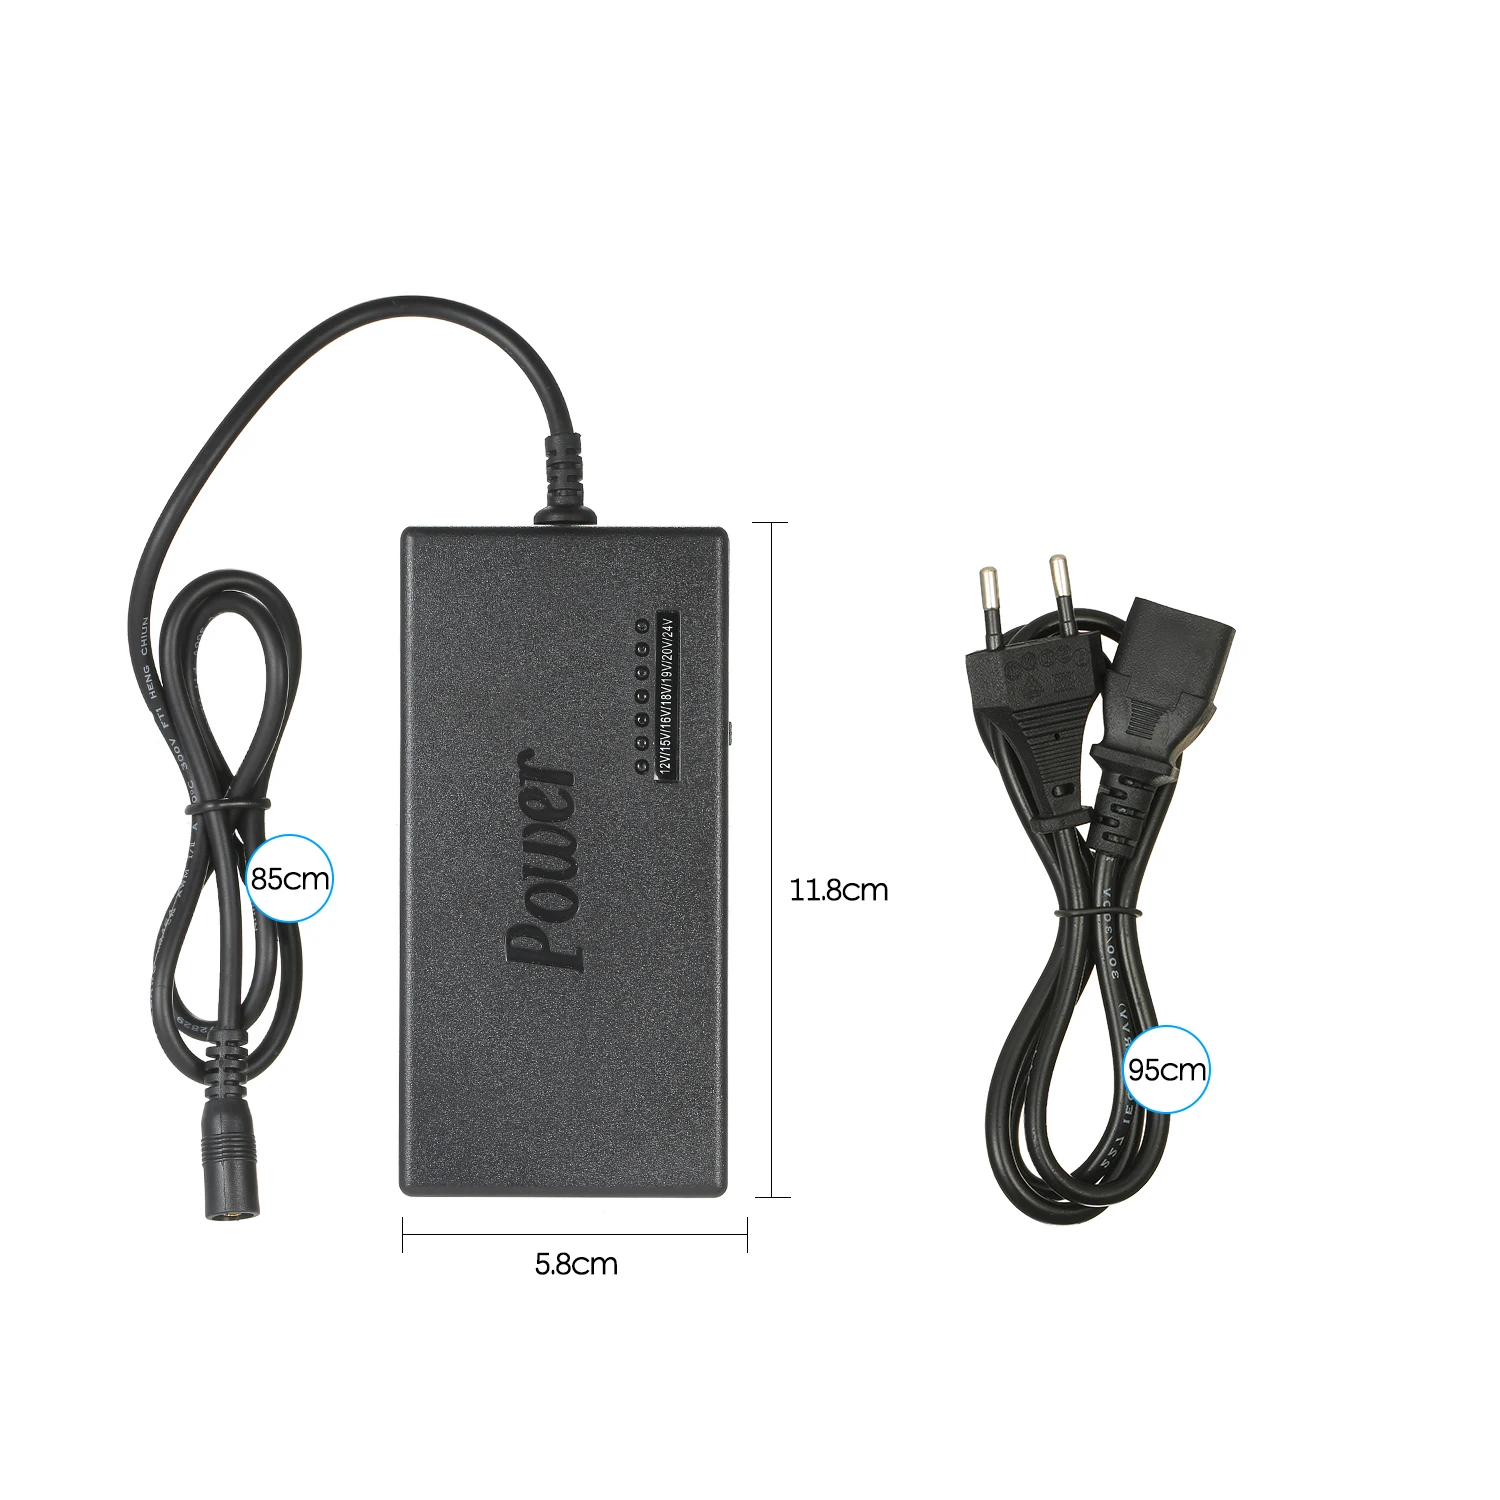 Универсальный адаптер питания 96 Вт 12 В до 24 В регулируемое портативное зарядное устройство для Dell Toshiba Hp Asus acer ноутбуков EU US UK AU Plug